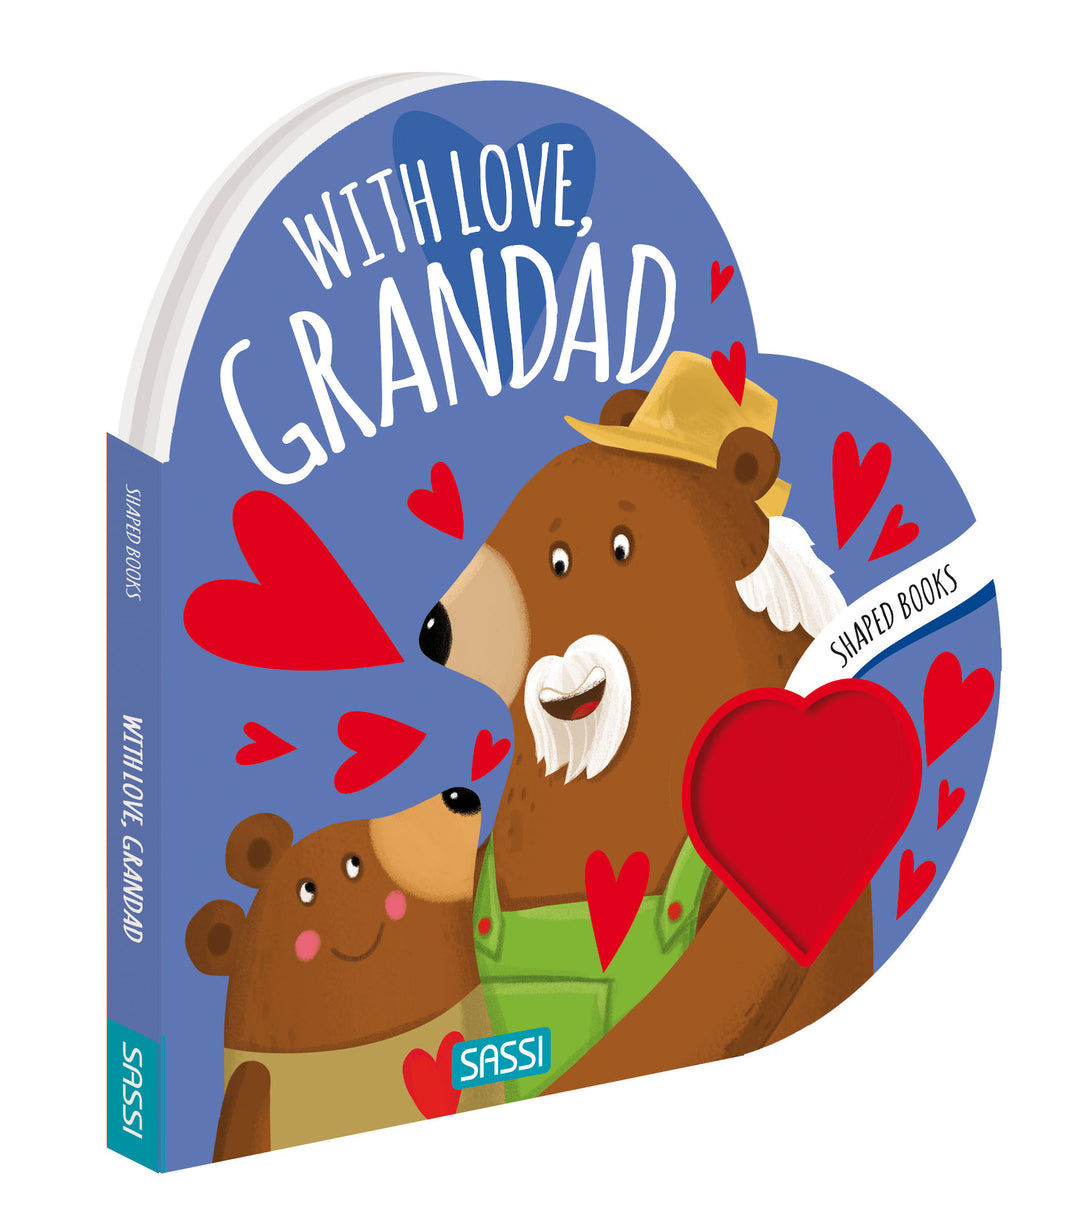 Sassi Board Book - with Love Grandad